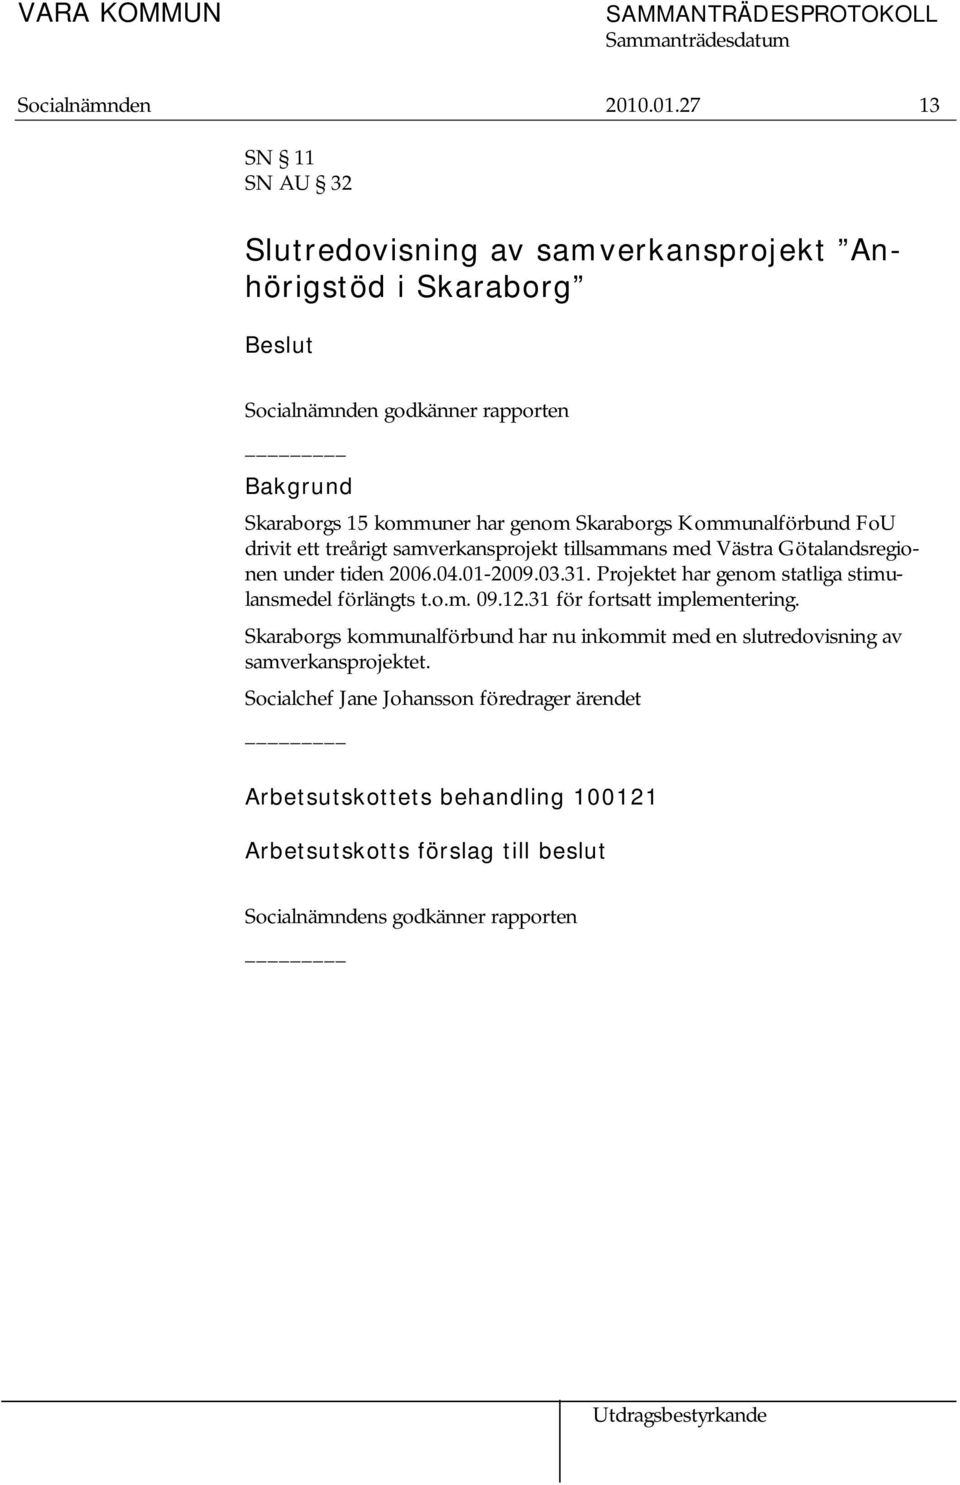 Skaraborgs Kommunalförbund FoU drivit ett treårigt samverkansprojekt tillsammans med Västra Götalandsregionen under tiden 2006.04.01-2009.03.31.